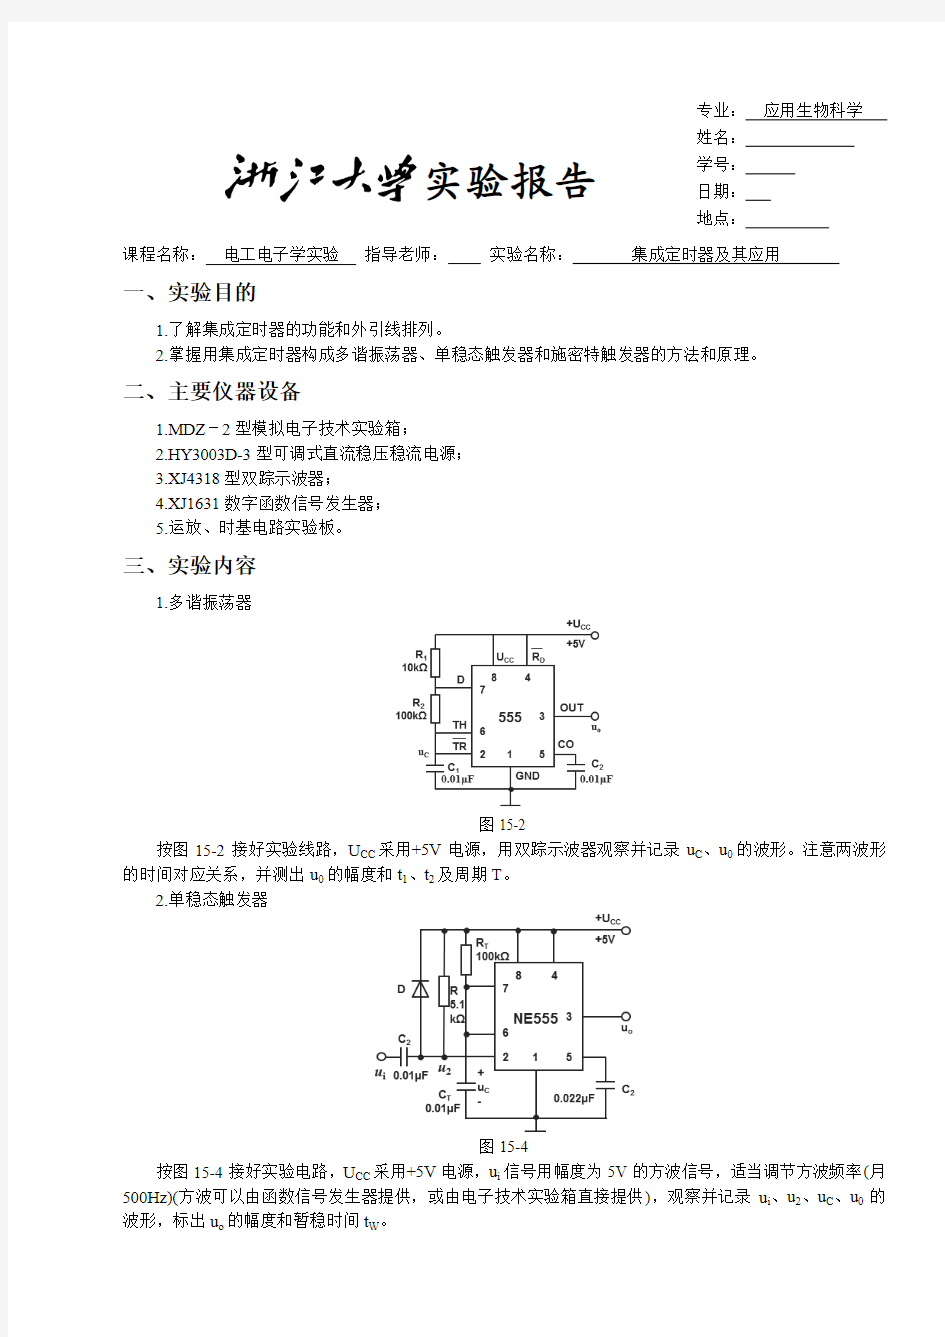 浙大版电工电子学实验报告15集成定时器及其应用